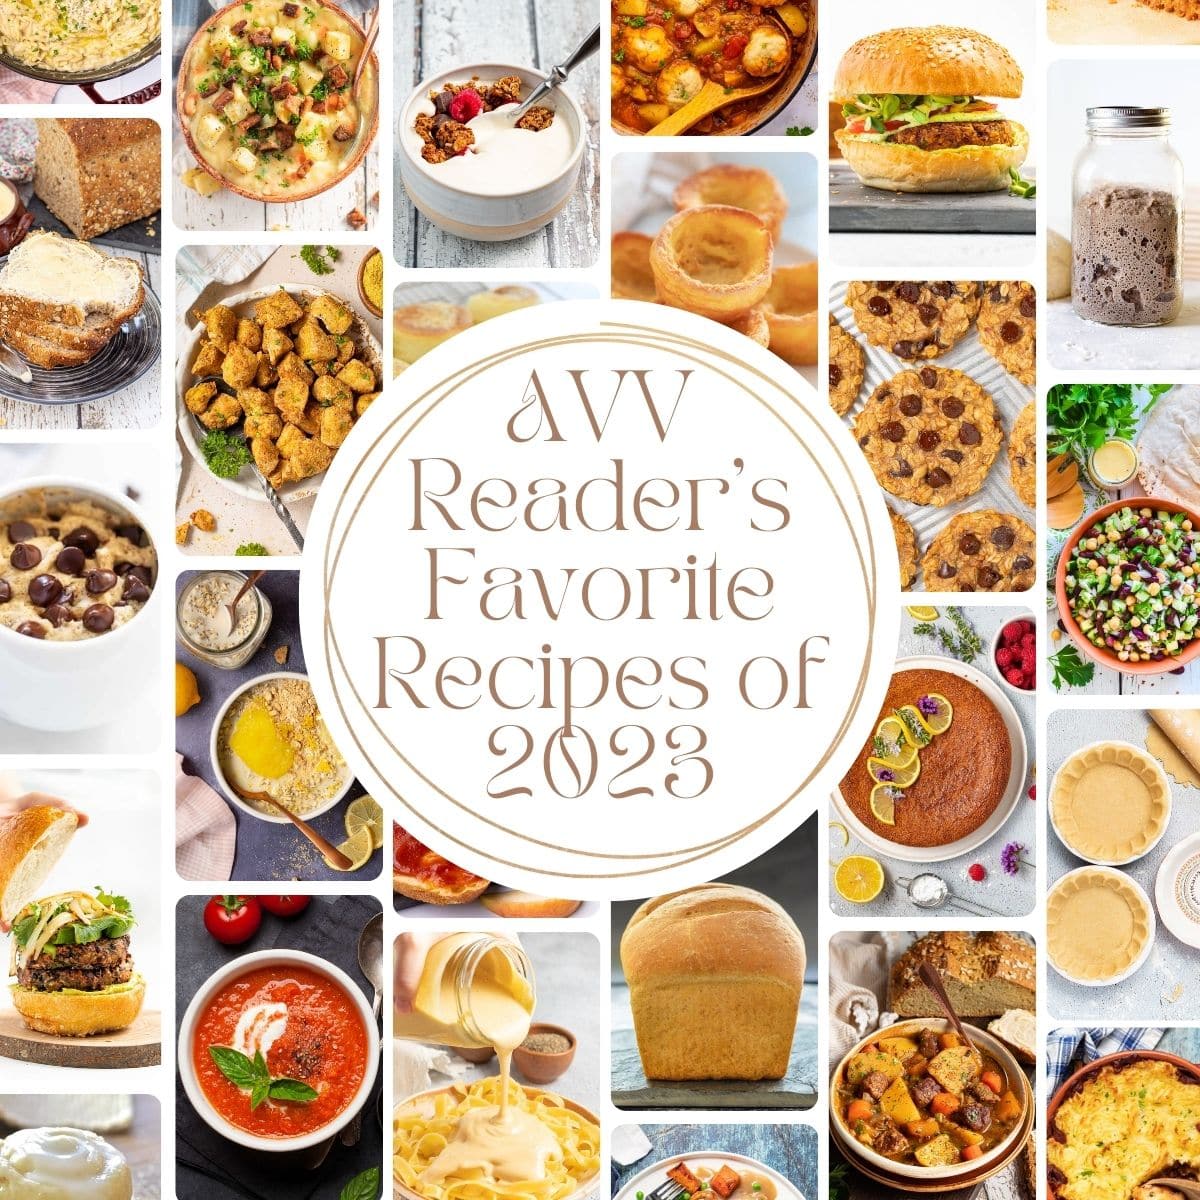 AVV Reader's Favorite Recipes of 2023